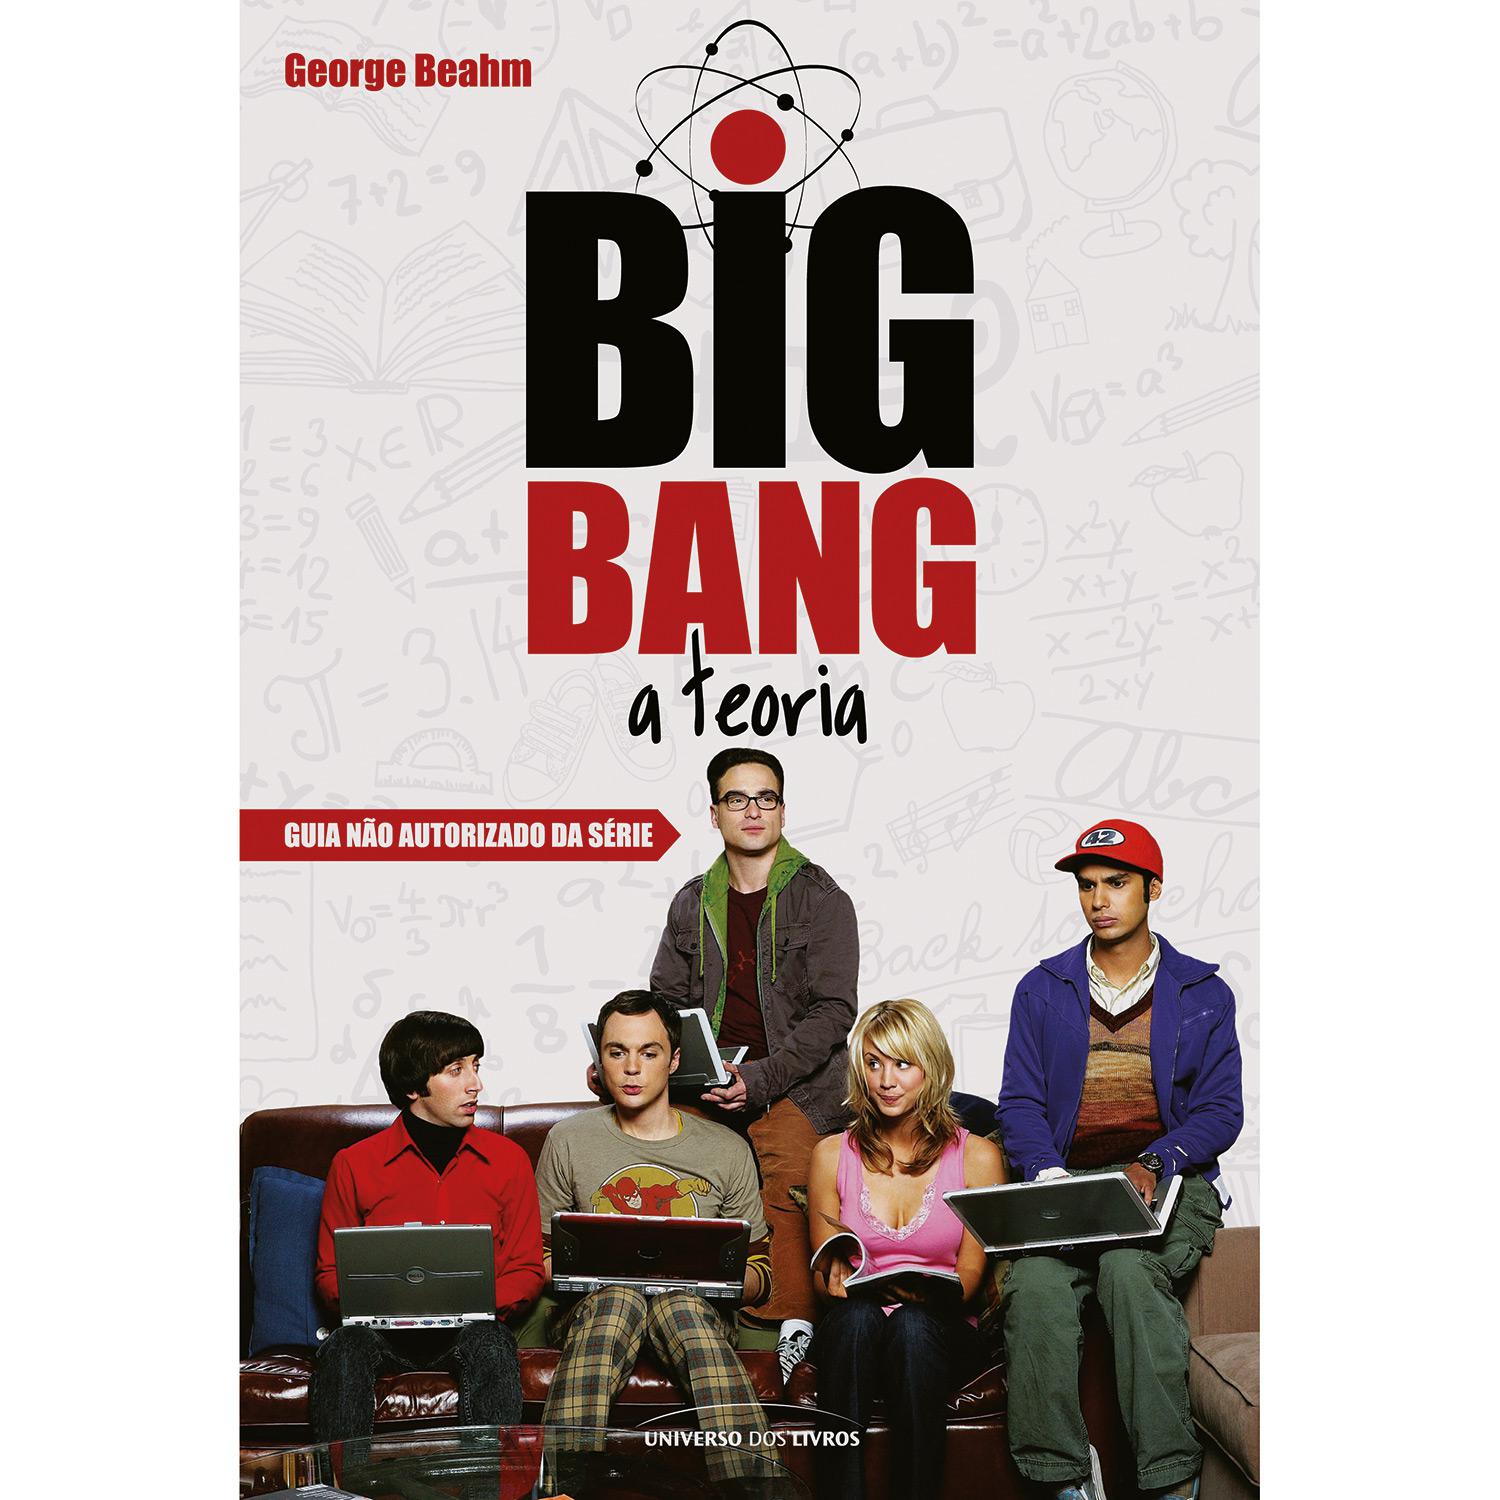 Livro - Big Bang: A Teoria, Guia Não-autorizado da Série é bom? Vale a pena?